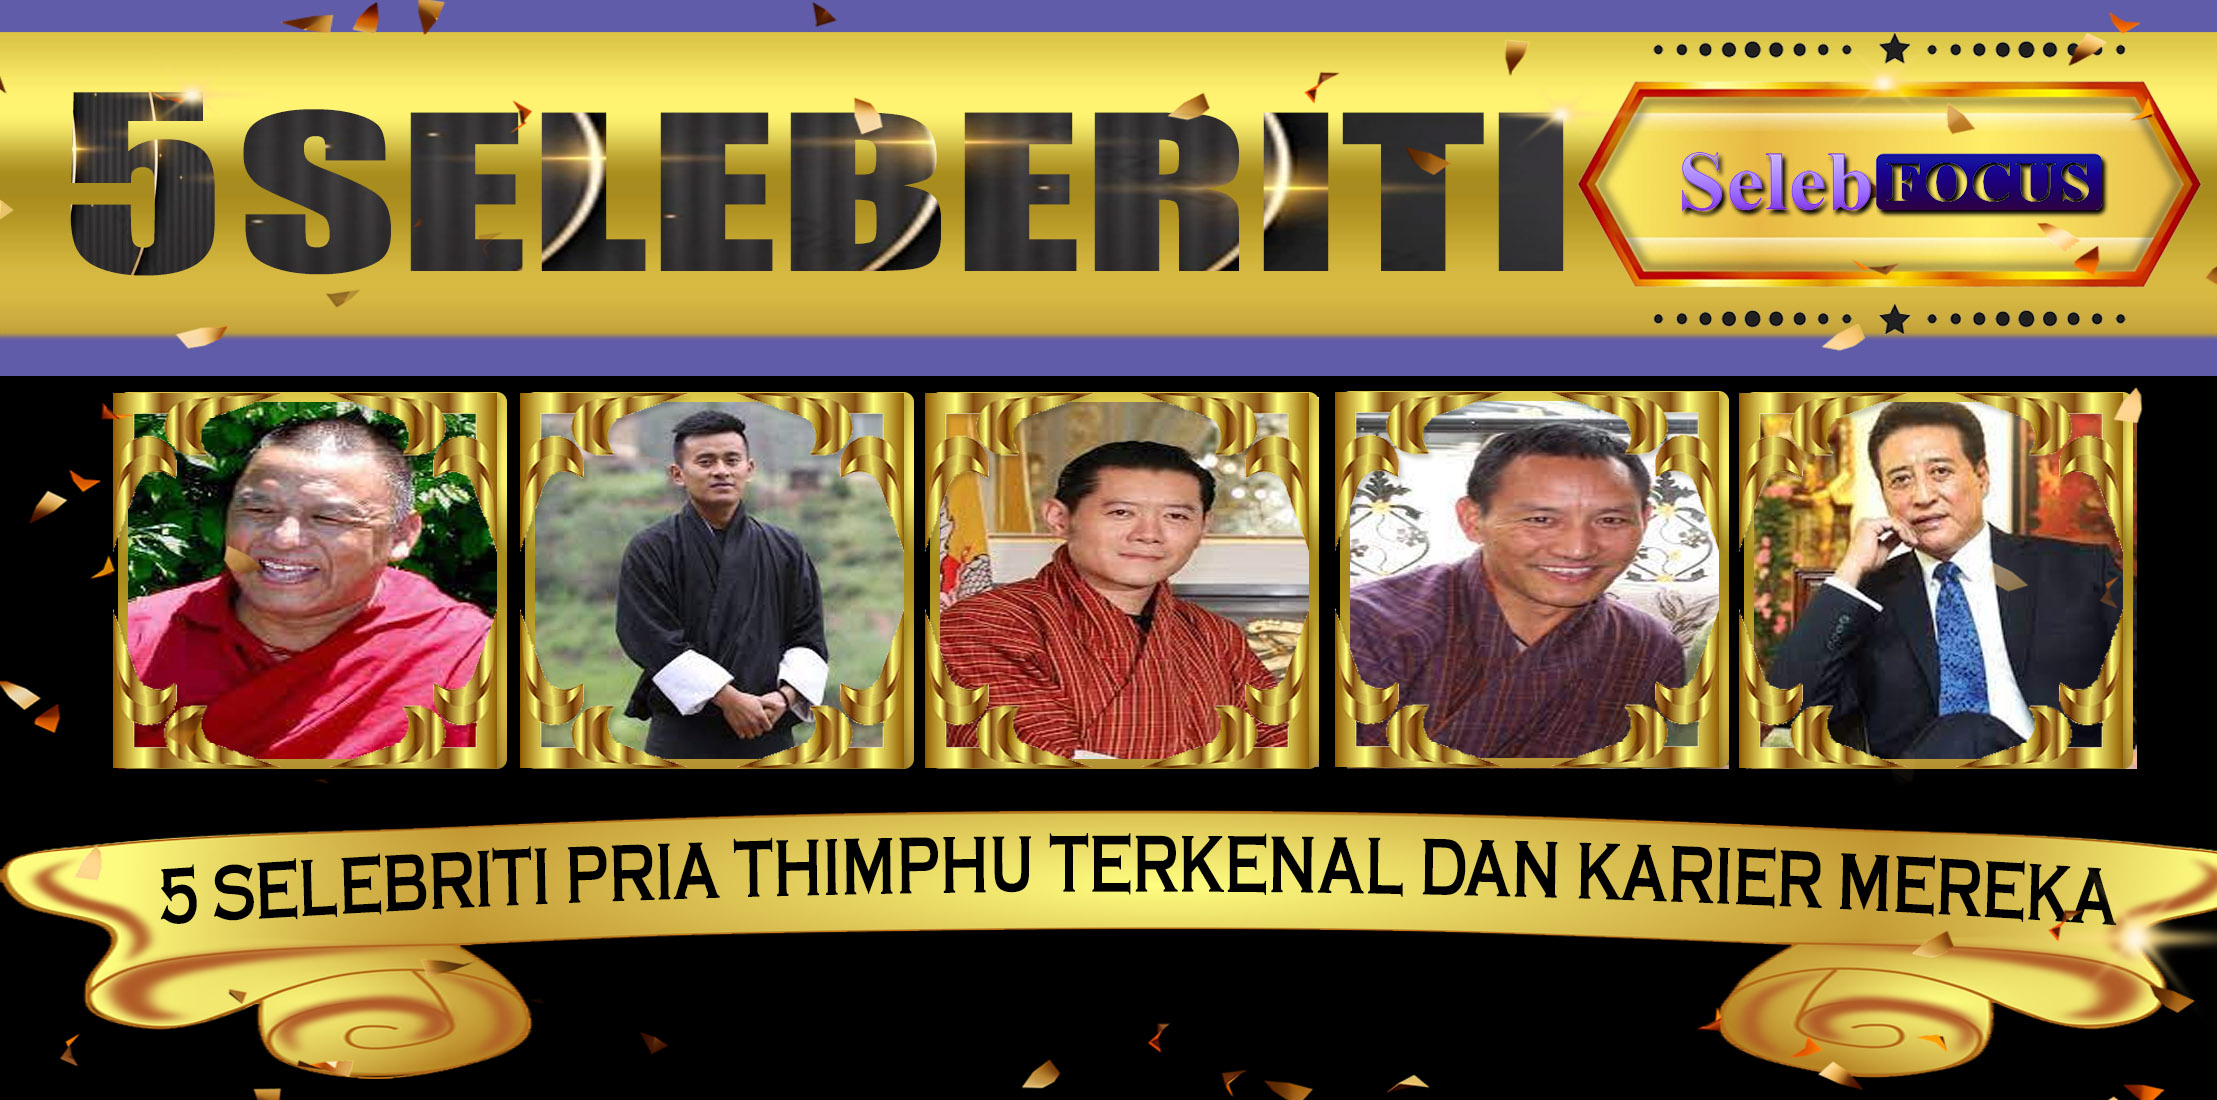 5 Selebriti Pria Thimphu Terkenal dan Karier Mereka